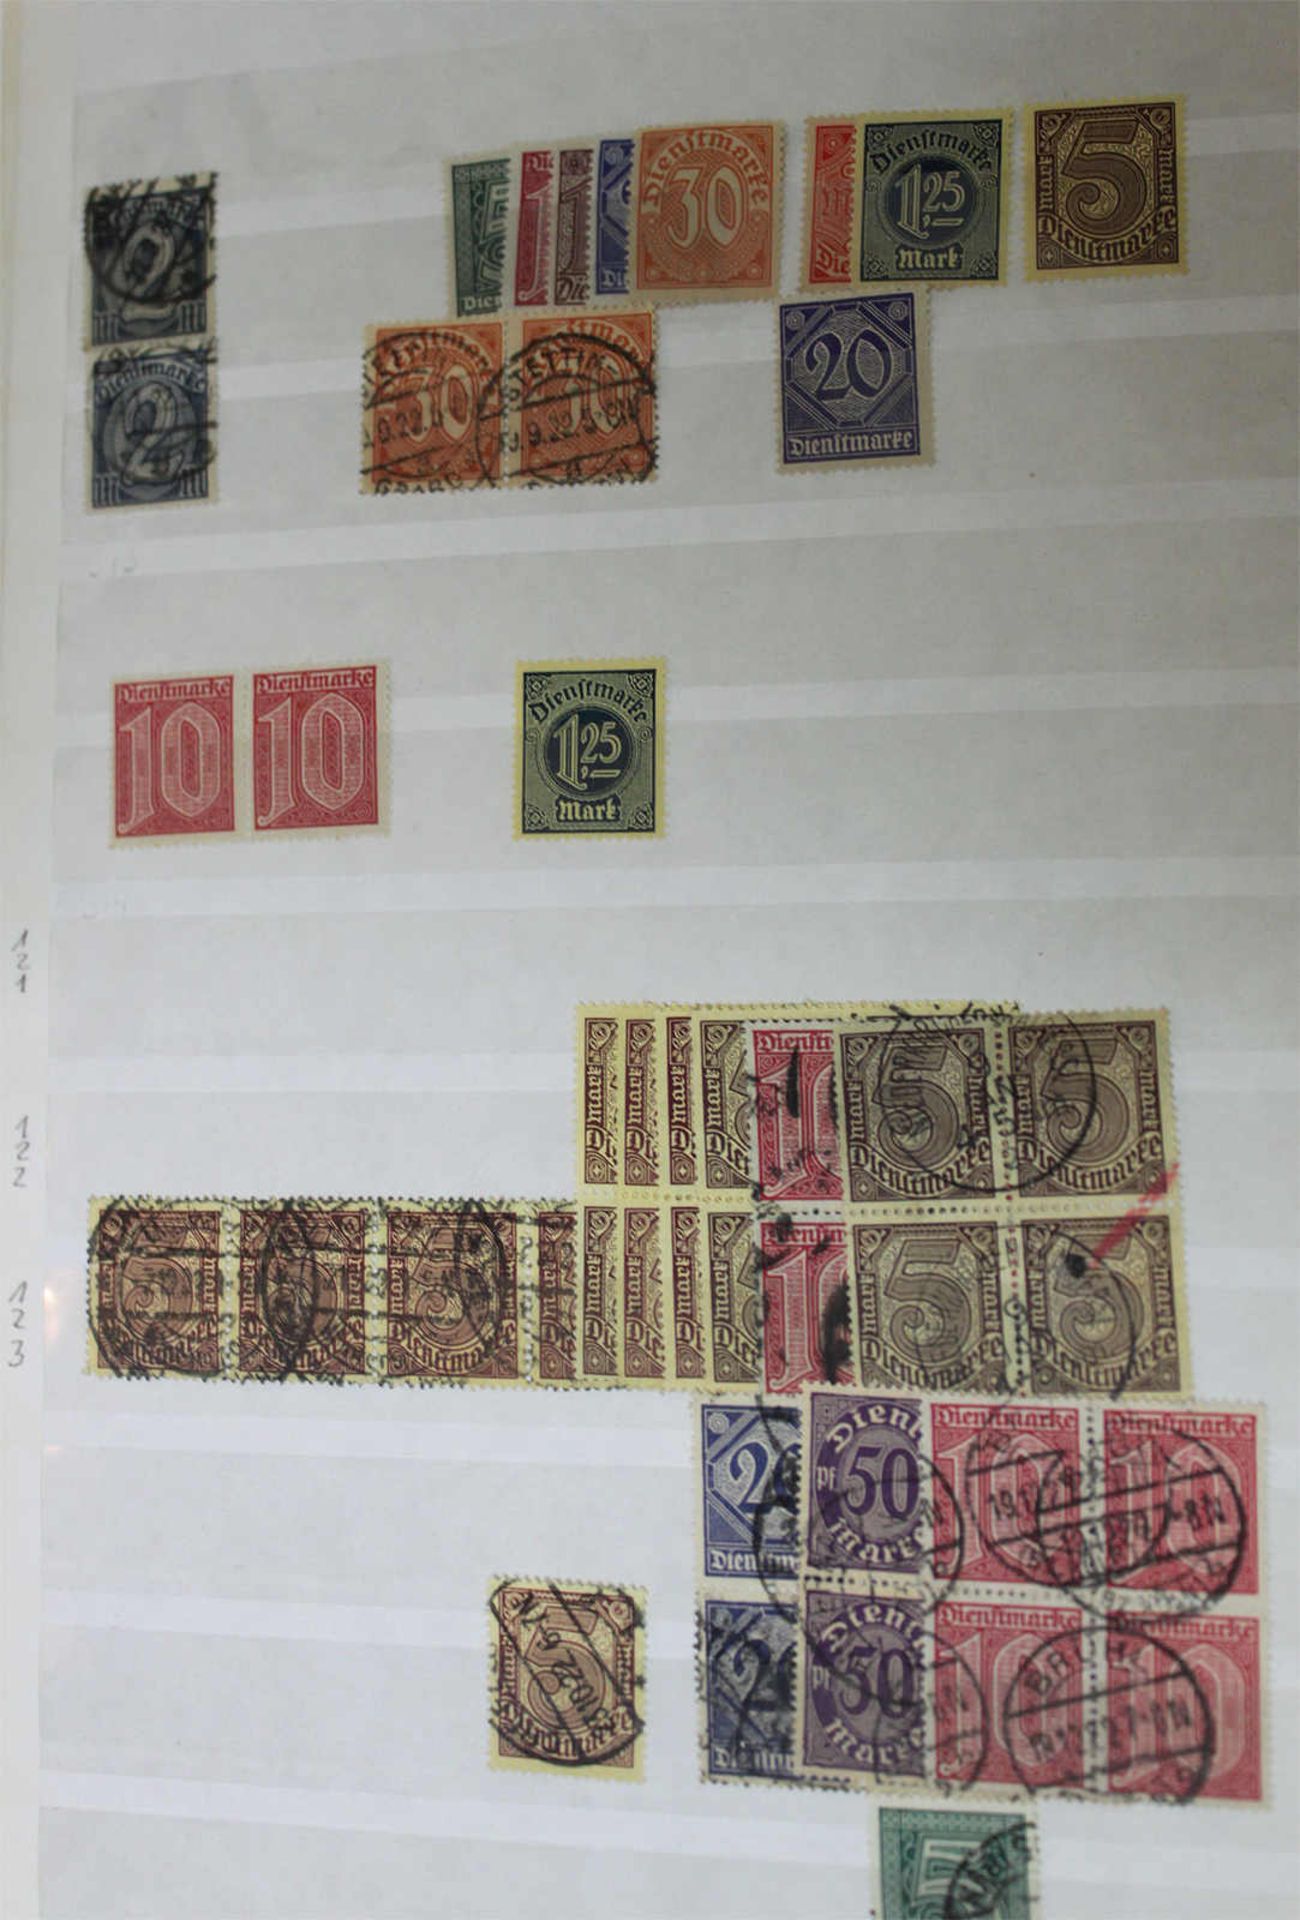 Dublettenalbum, Deutsches Reich, viel Inflation, dabei viele 4er Blöcke und Einheiten, Hoher - Image 3 of 3